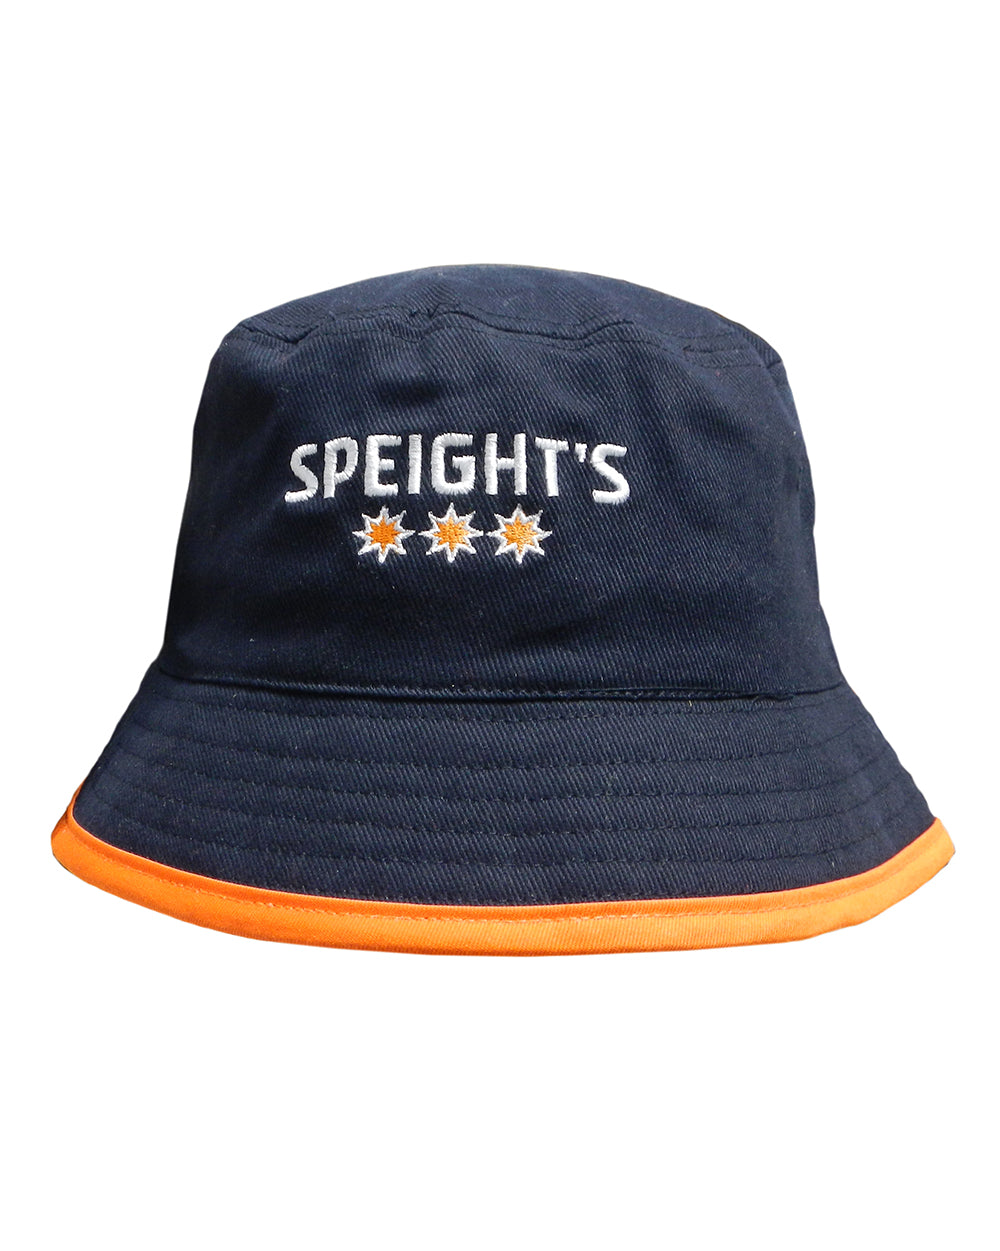 Speight's Bucket Hat - Wear It Proud NZL